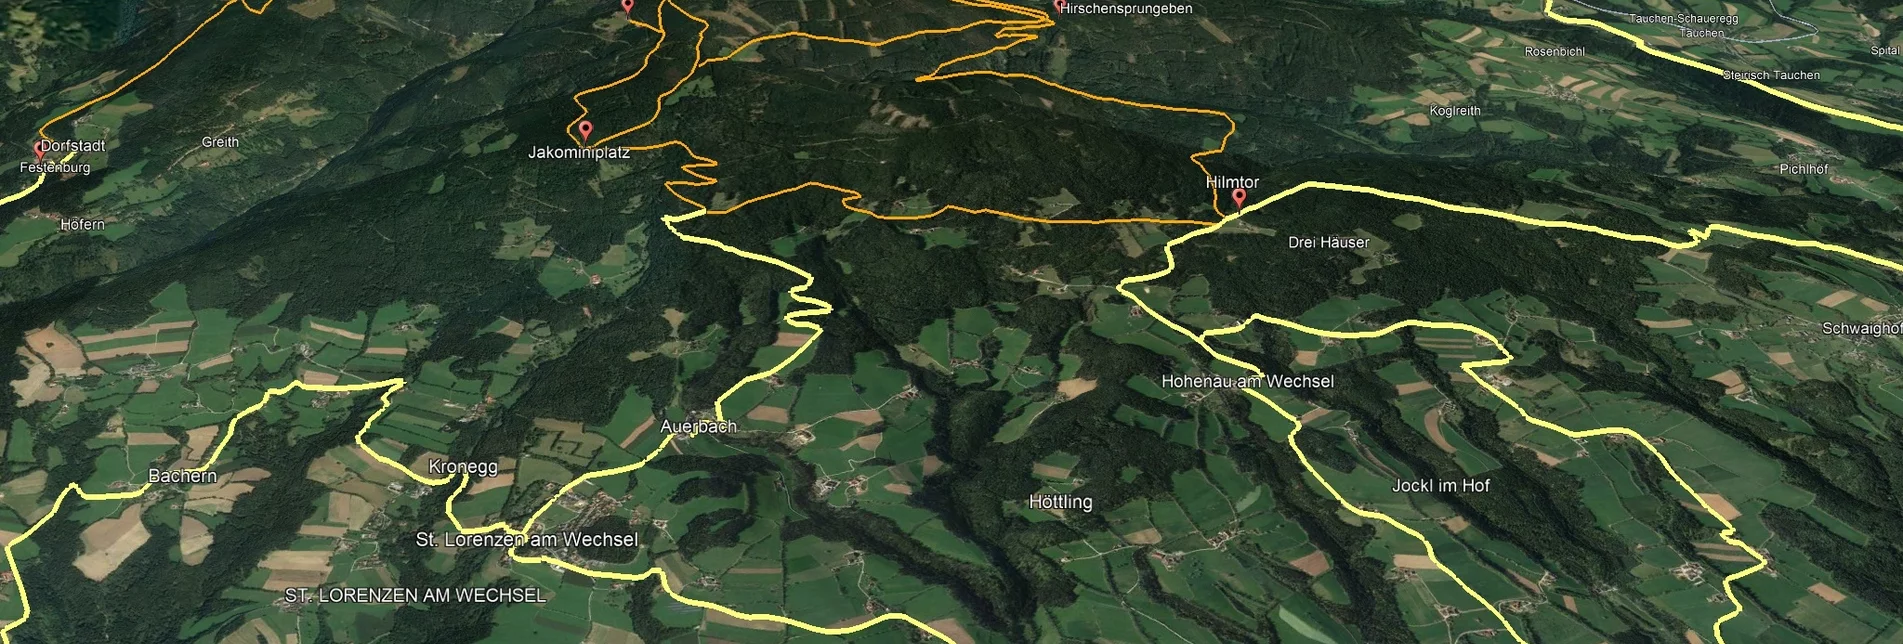 Mountainbike VORSCHAU Steirische Wexl Trails - Glatzl Trahütten Alm Route - Touren-Impression #1 | © Verein Tourismusentwicklung Steirischer Wechsel